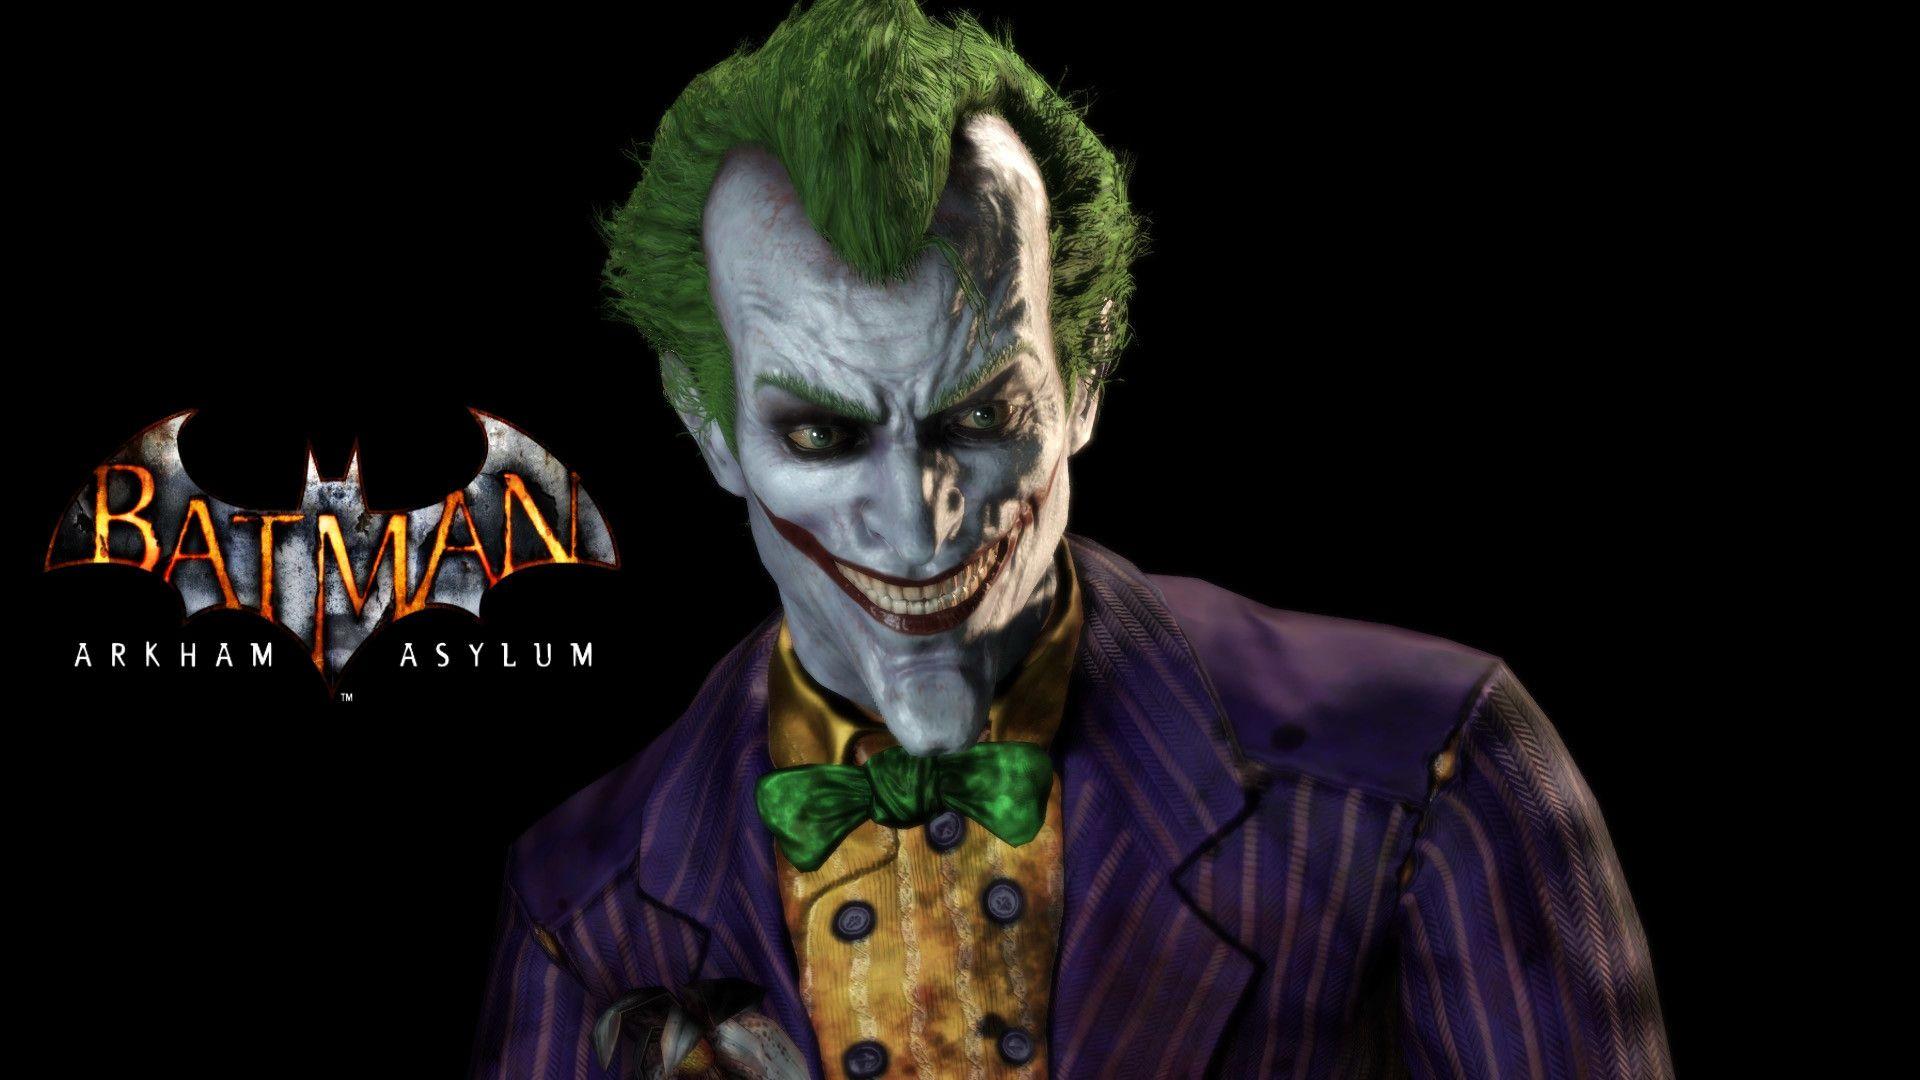 Joker Arkham Wallpapers - Top Free Joker Arkham Backgrounds -  WallpaperAccess